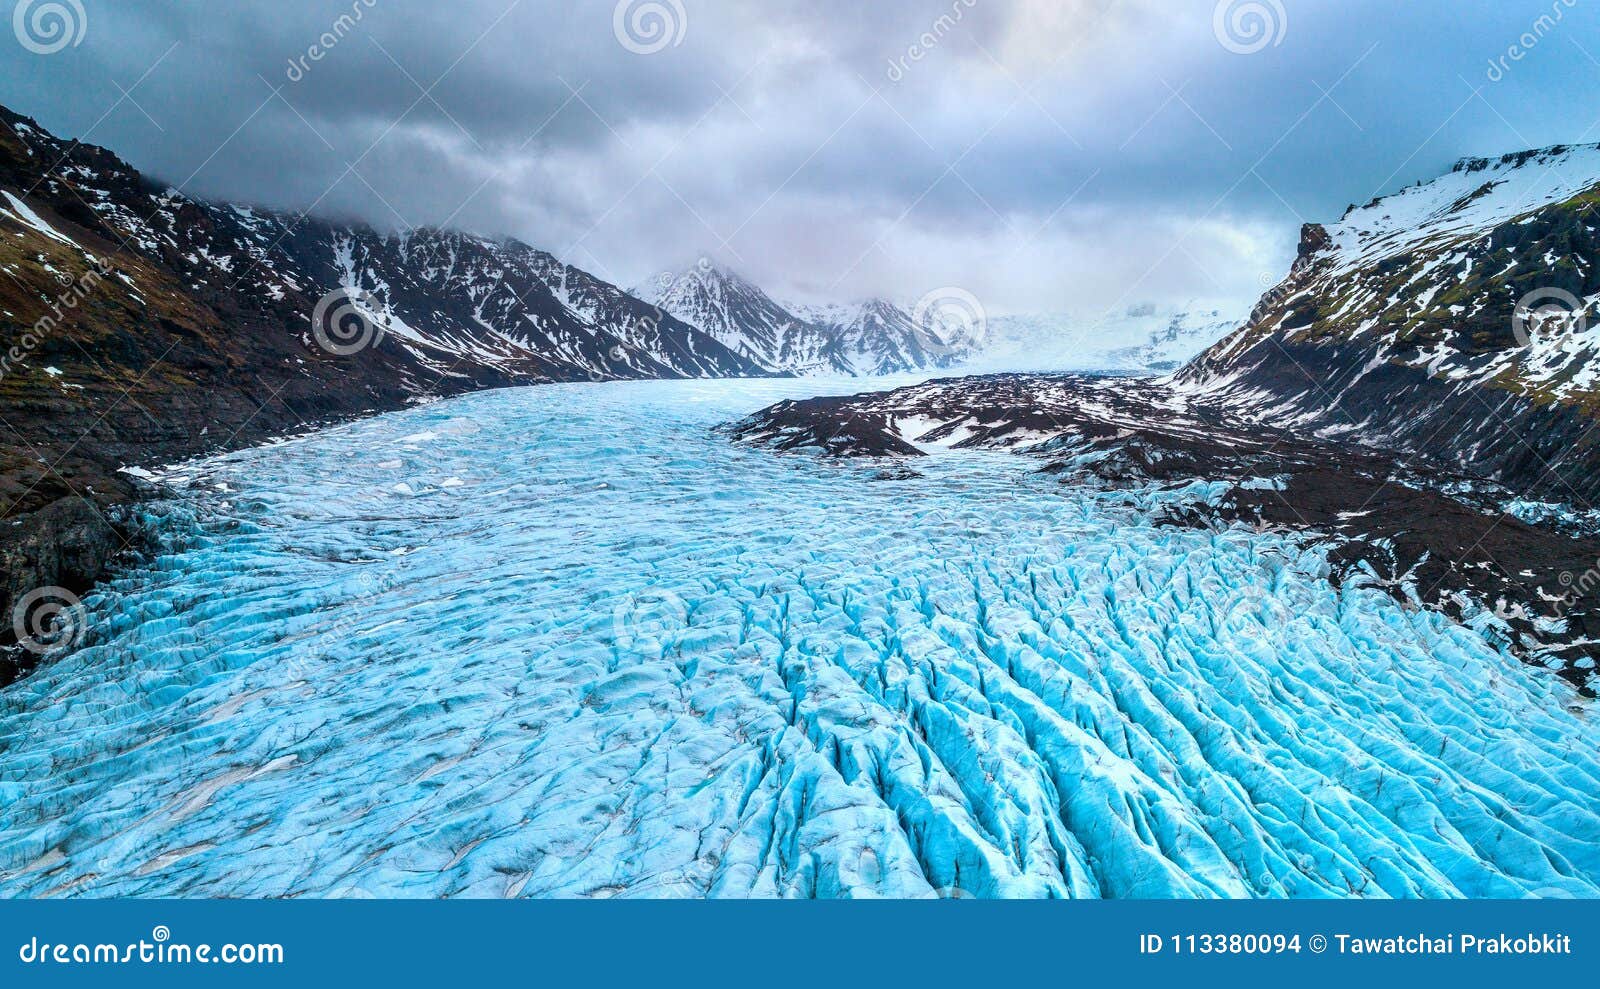 skaftafell glacier, vatnajokull national park in iceland